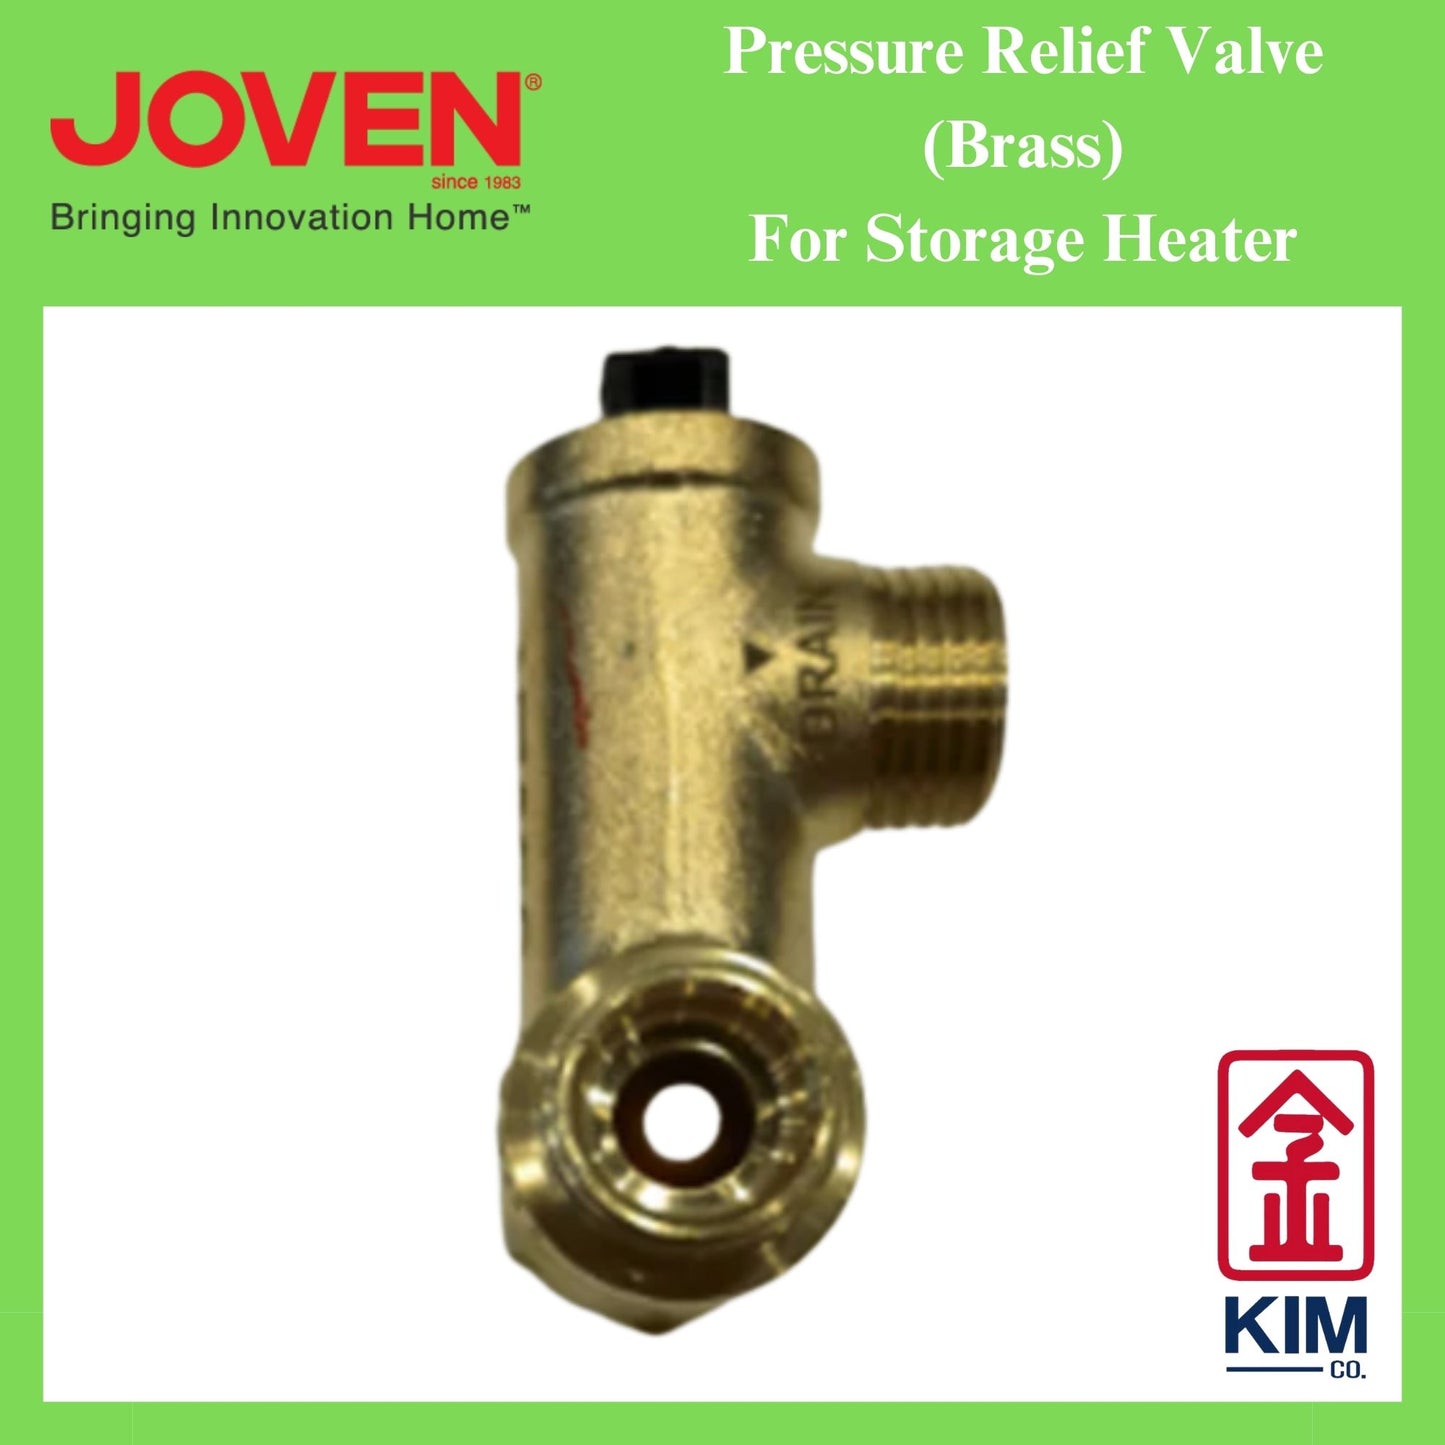 Joven Genuine Part Brass Pressure Relief Valve For Water Storage Heater